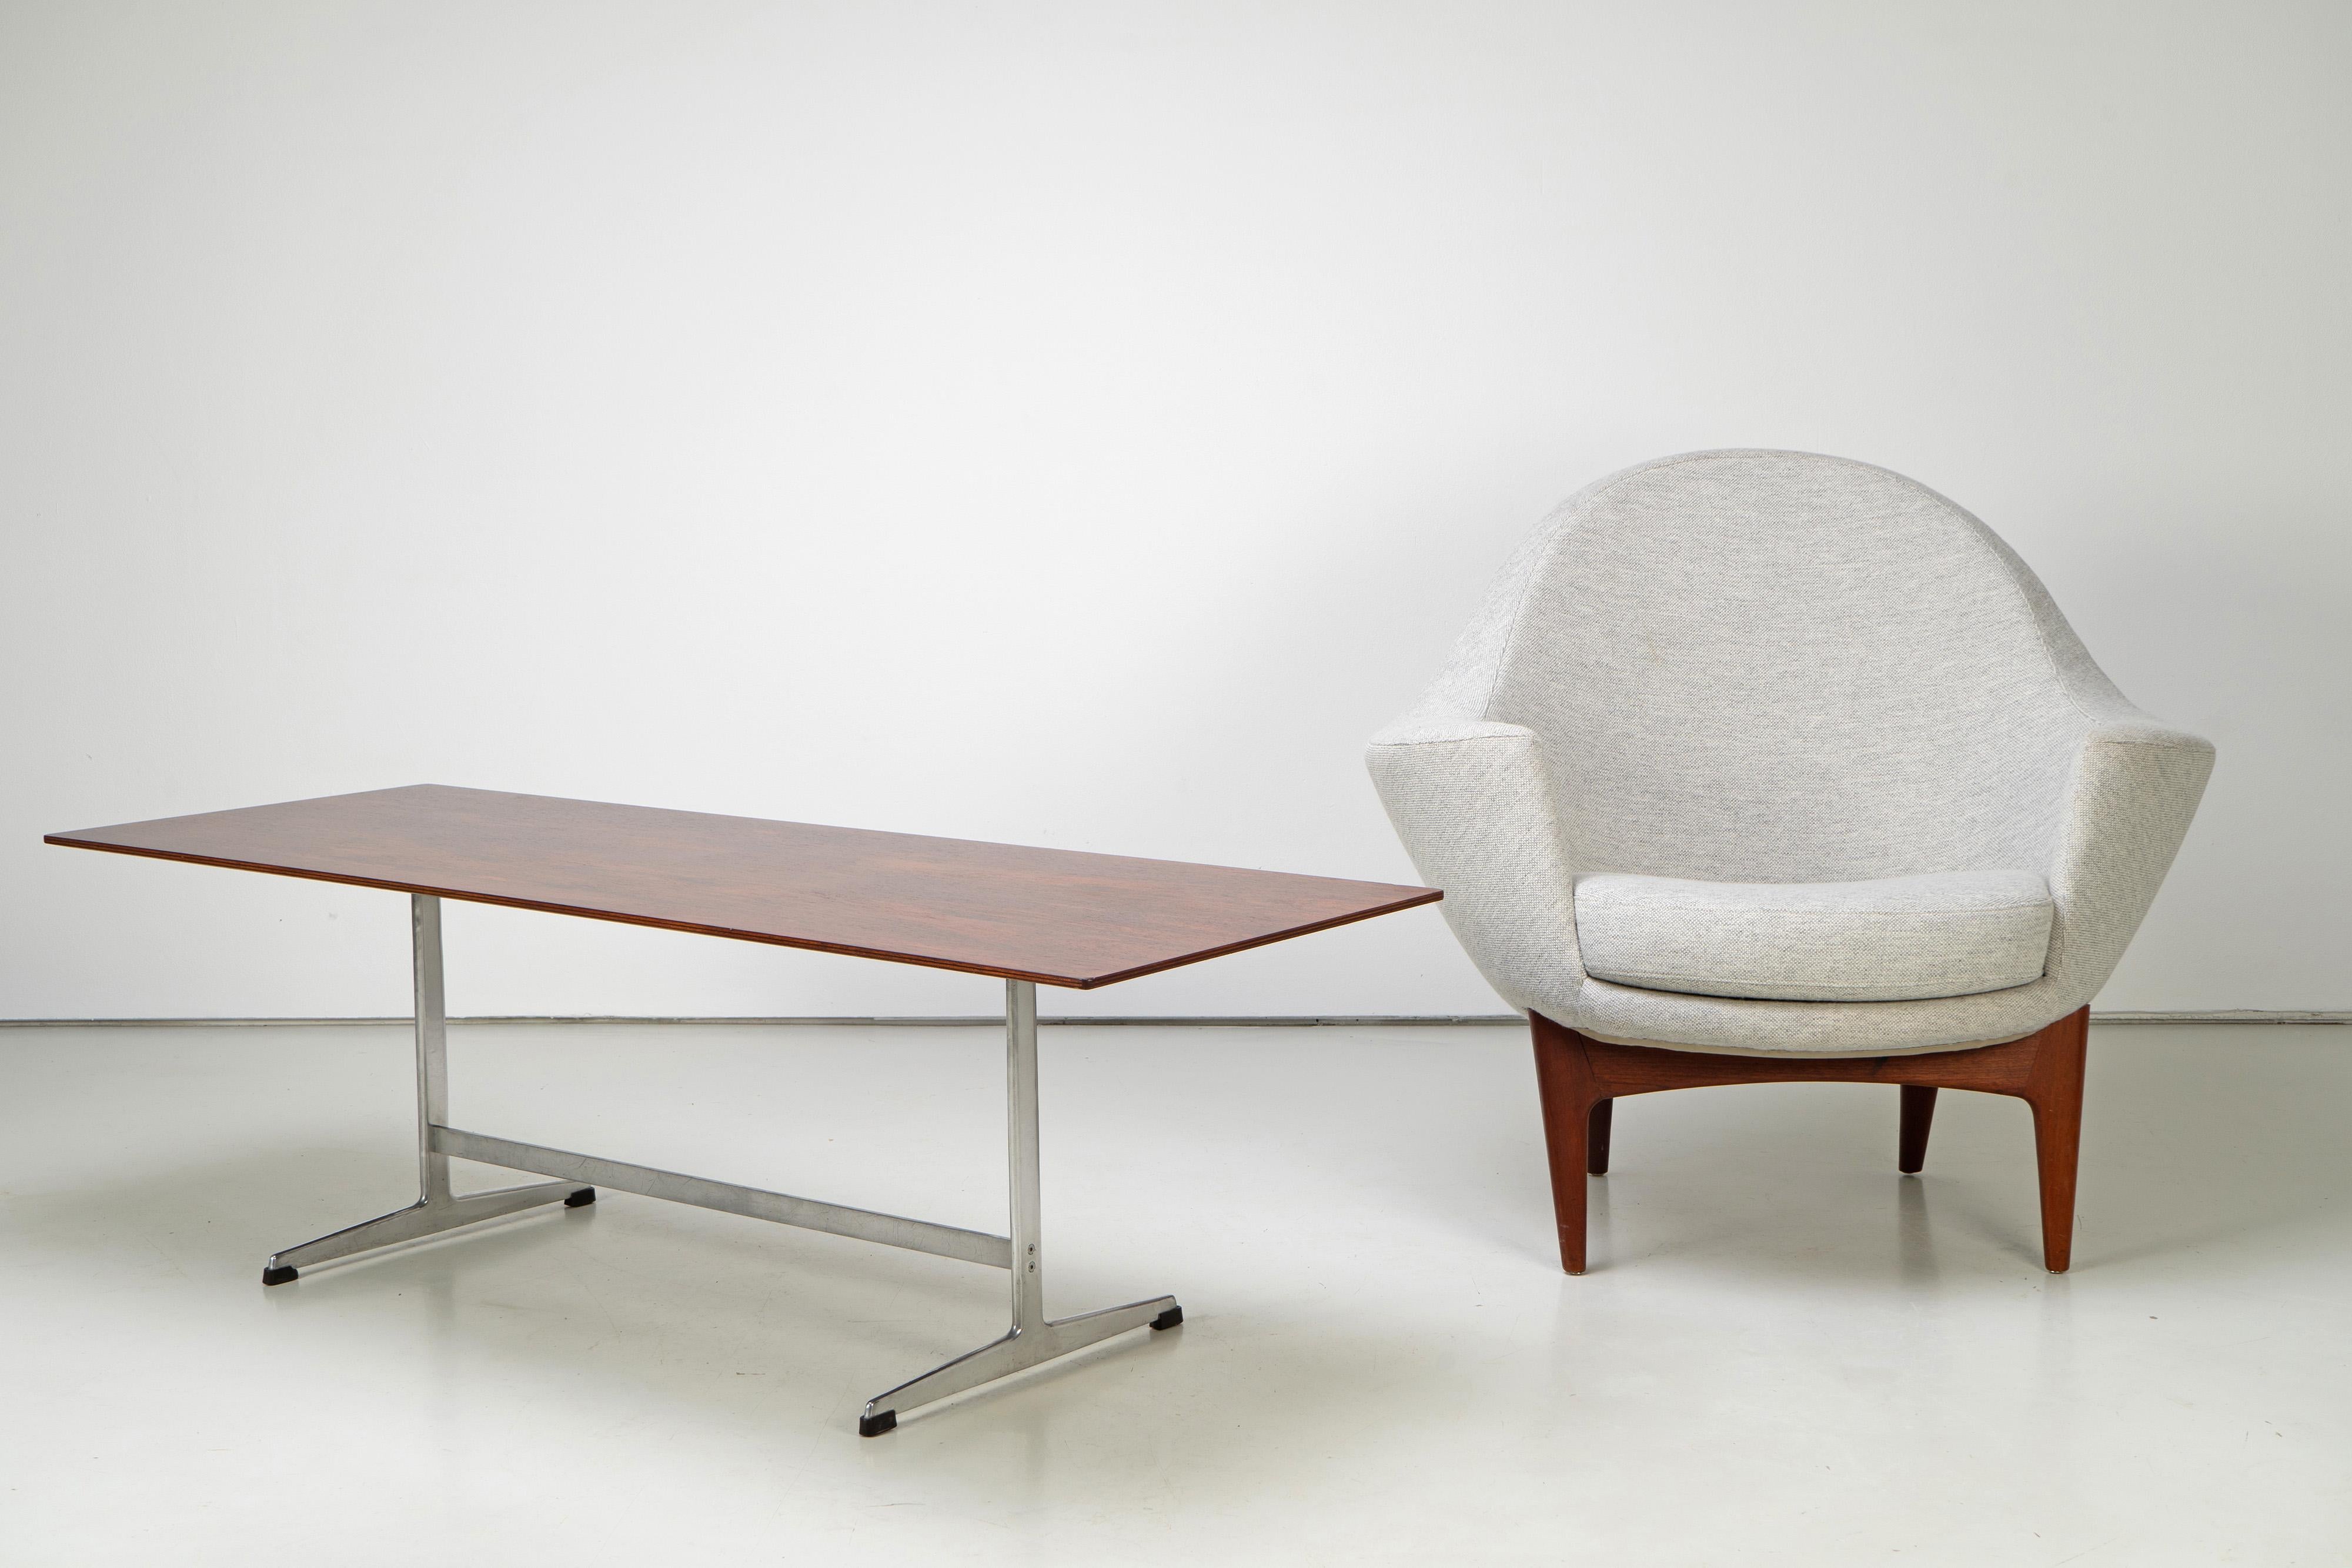 Rare coffee table by Arne Jacobsen, manufactured in the 1960s. This coffee table is sold with a valid CITES document.

Seltener Couchtisch von Arne Jacobsen, hergestellt in den 1960er Jahren. Dieser Couchtisch wird mit gültigem CITES-Dokument